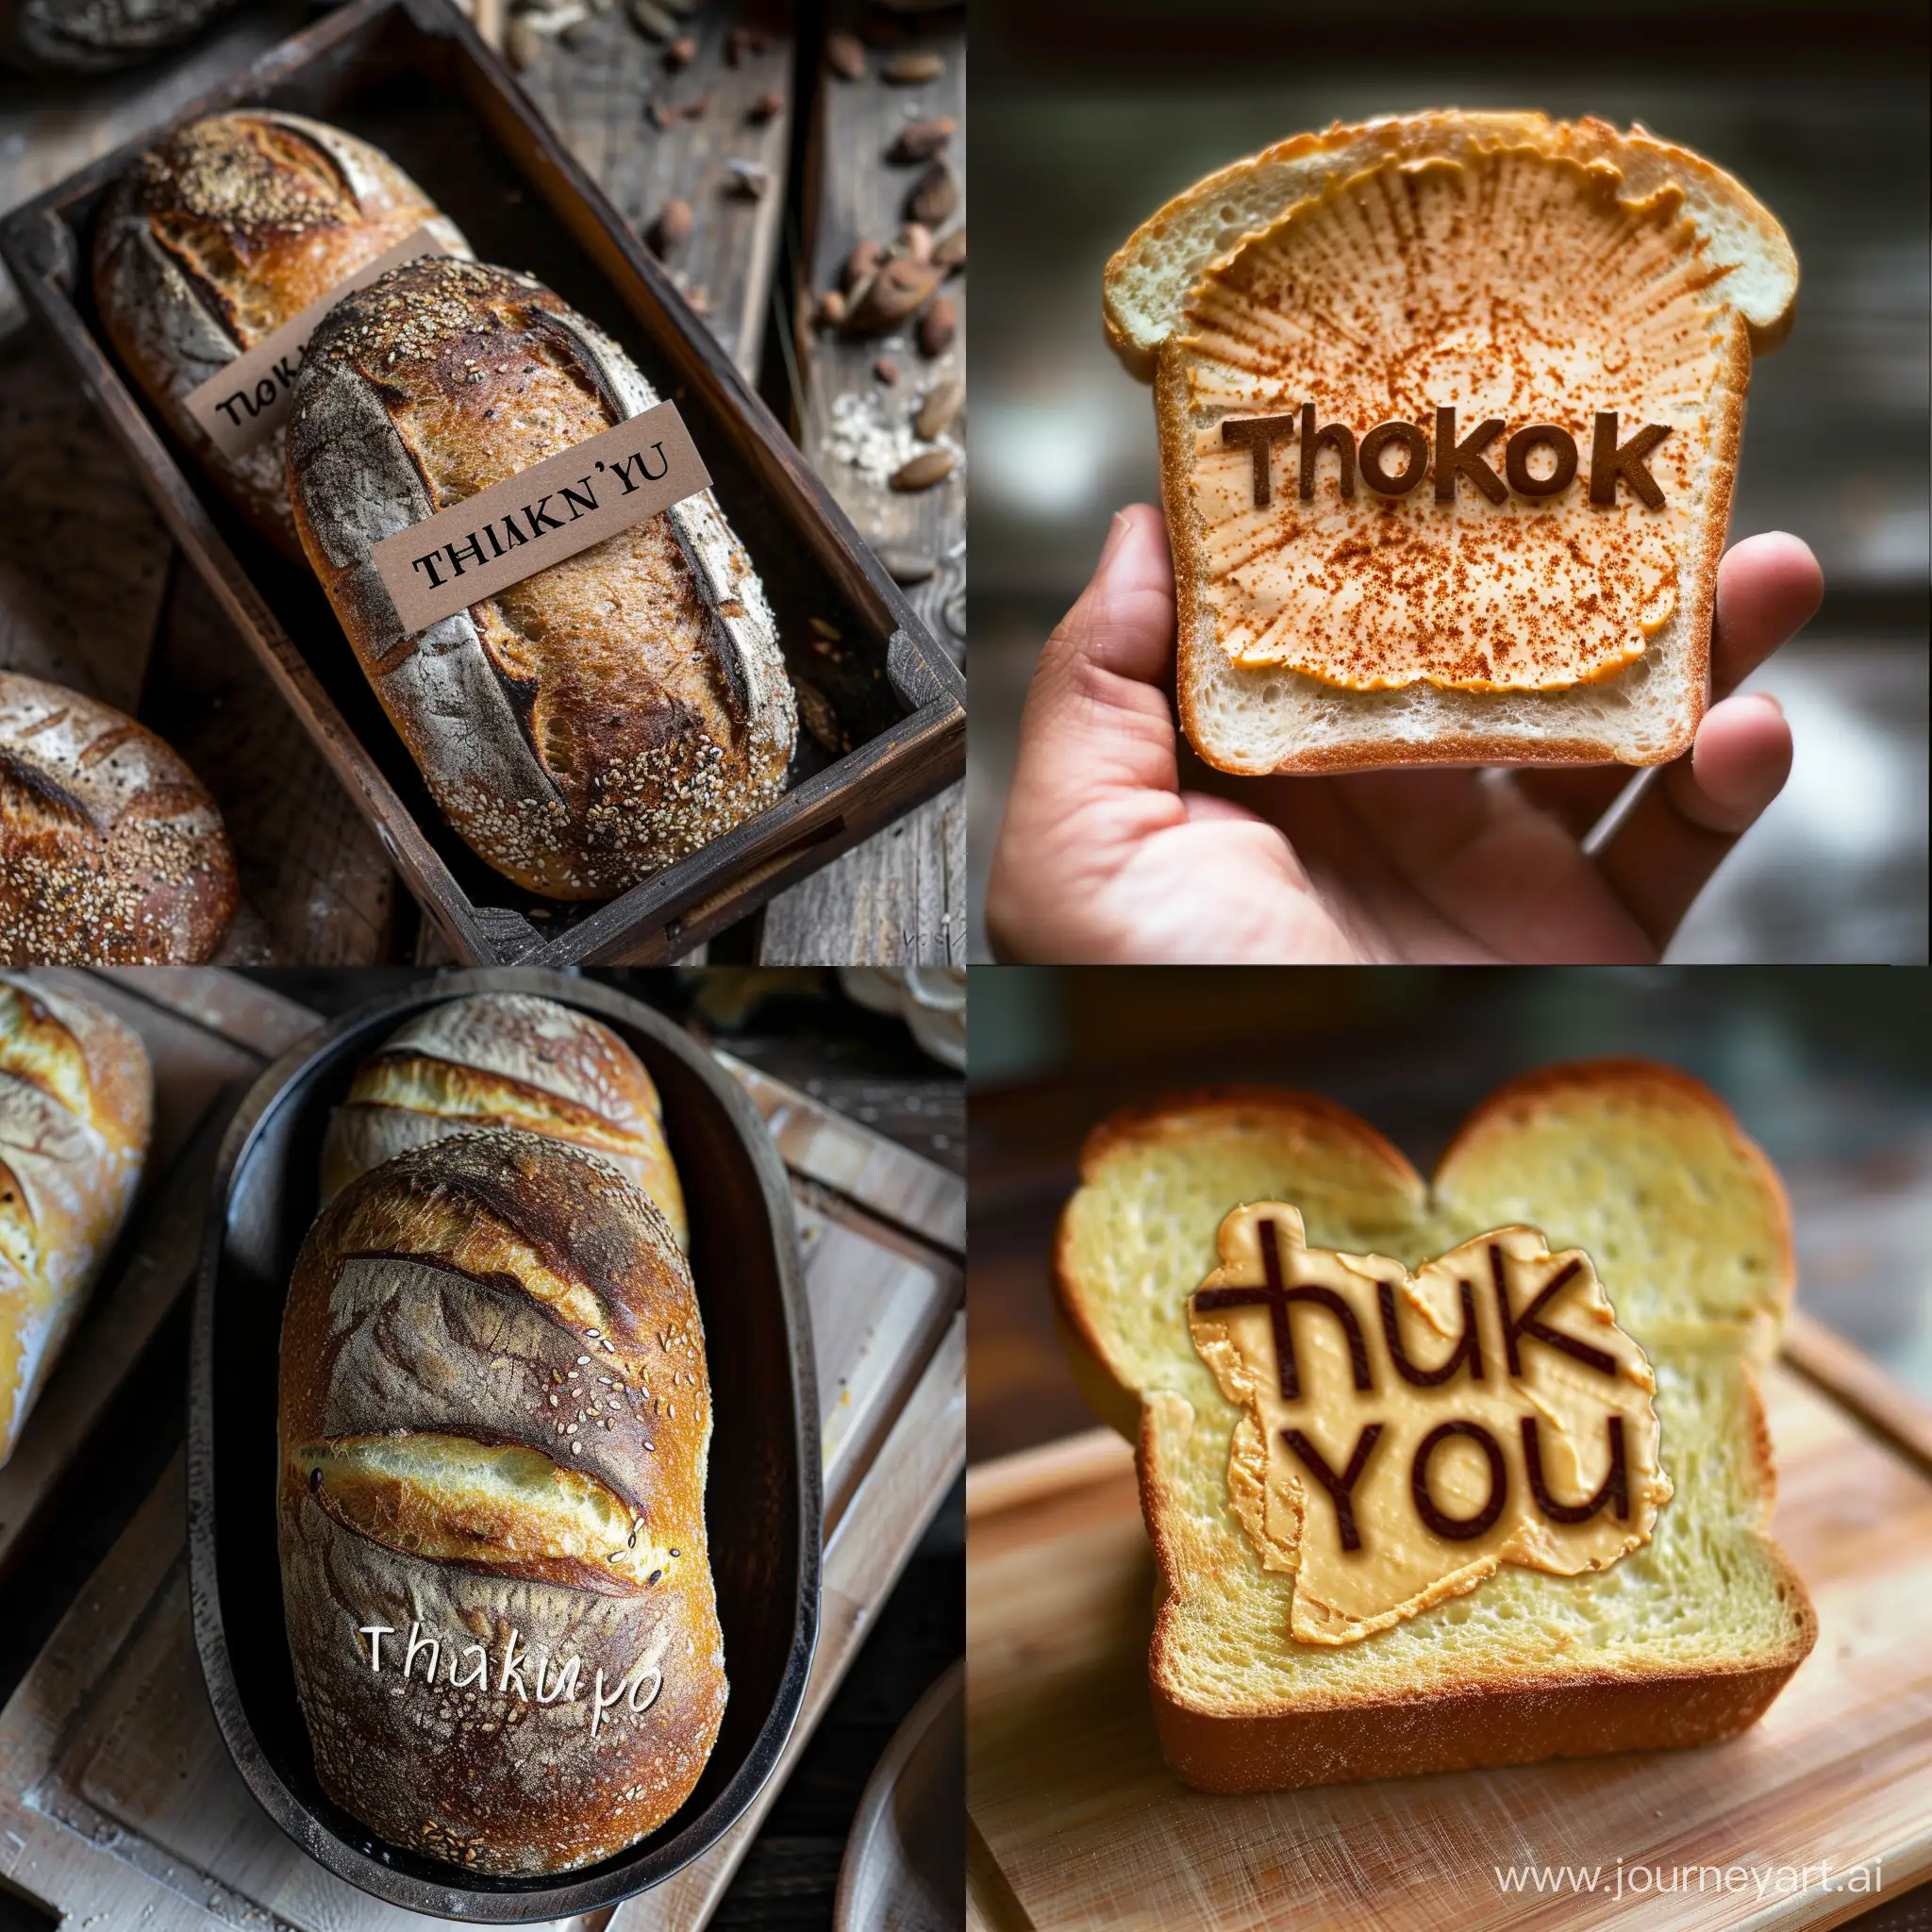 Joyful-Toast-Art-Creation-Thank-You-Spread-on-Bread